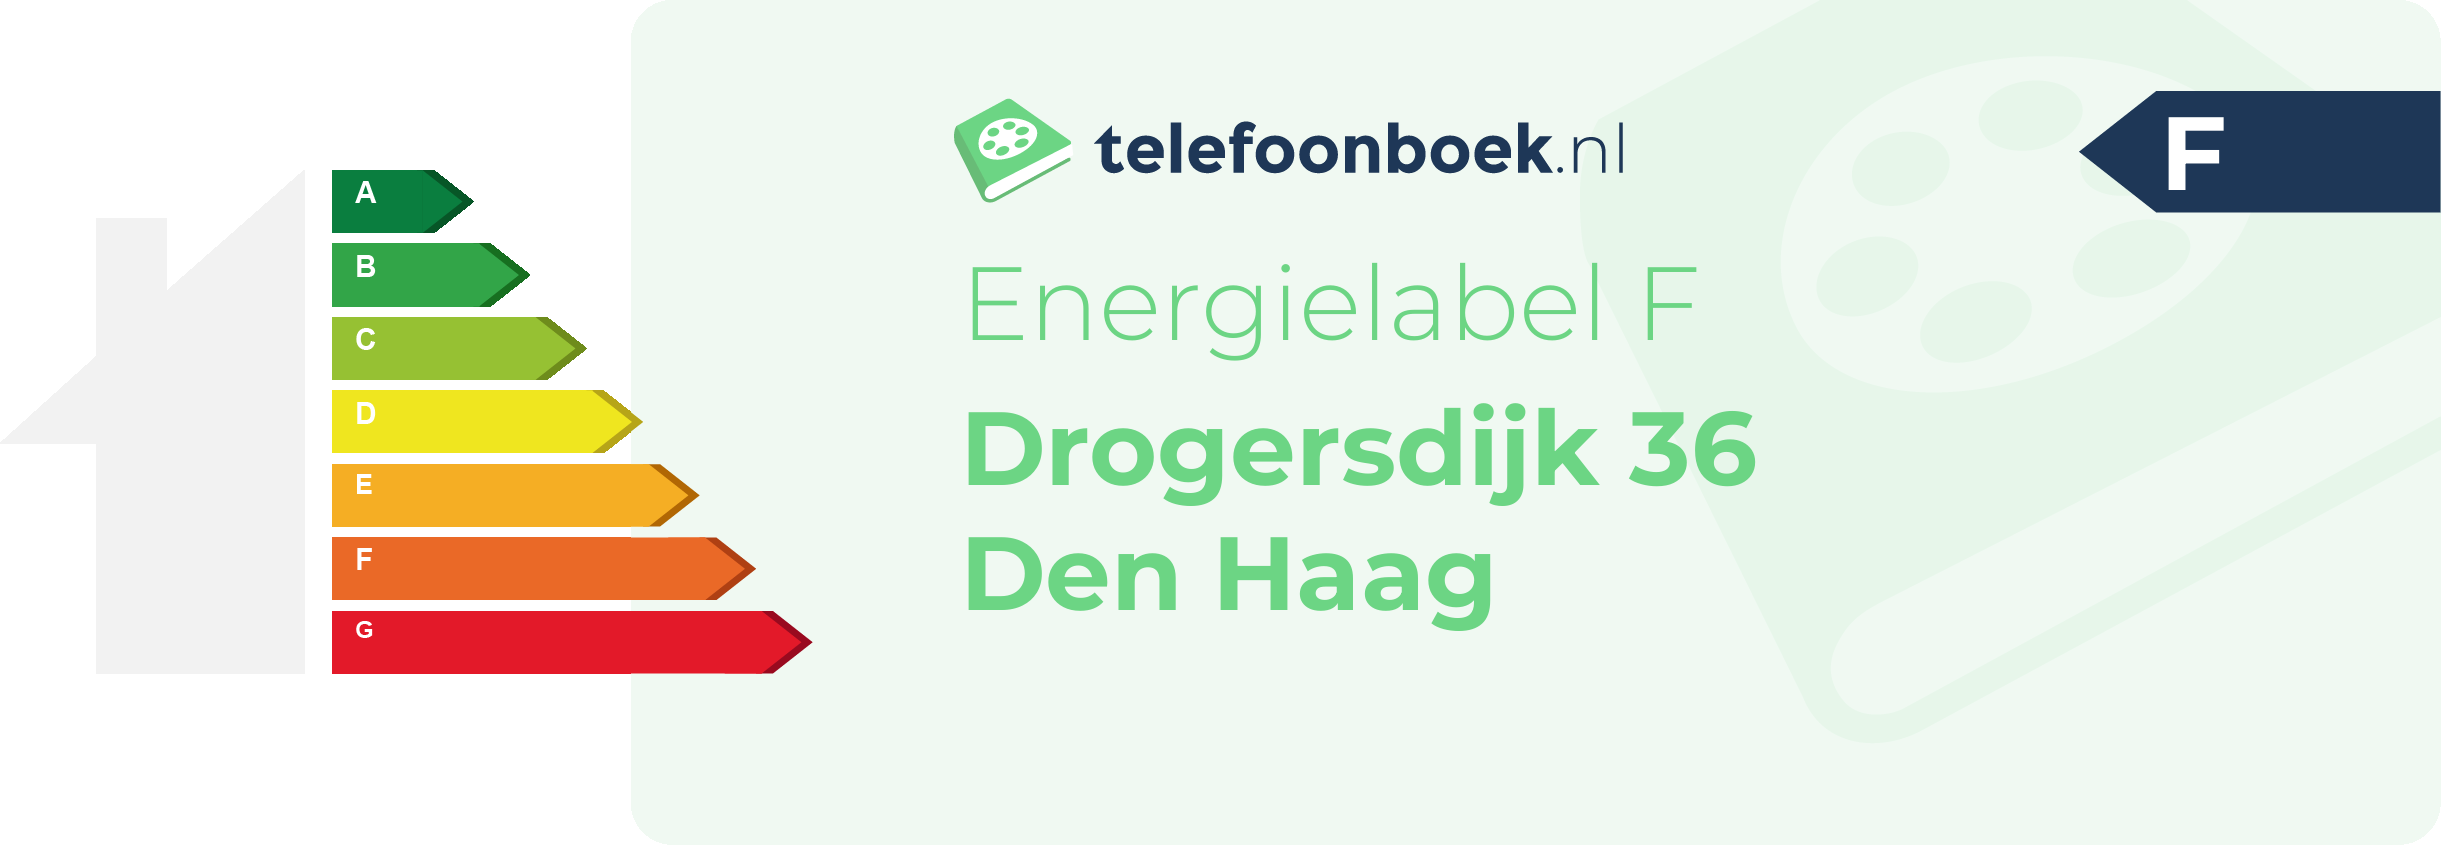 Energielabel Drogersdijk 36 Den Haag